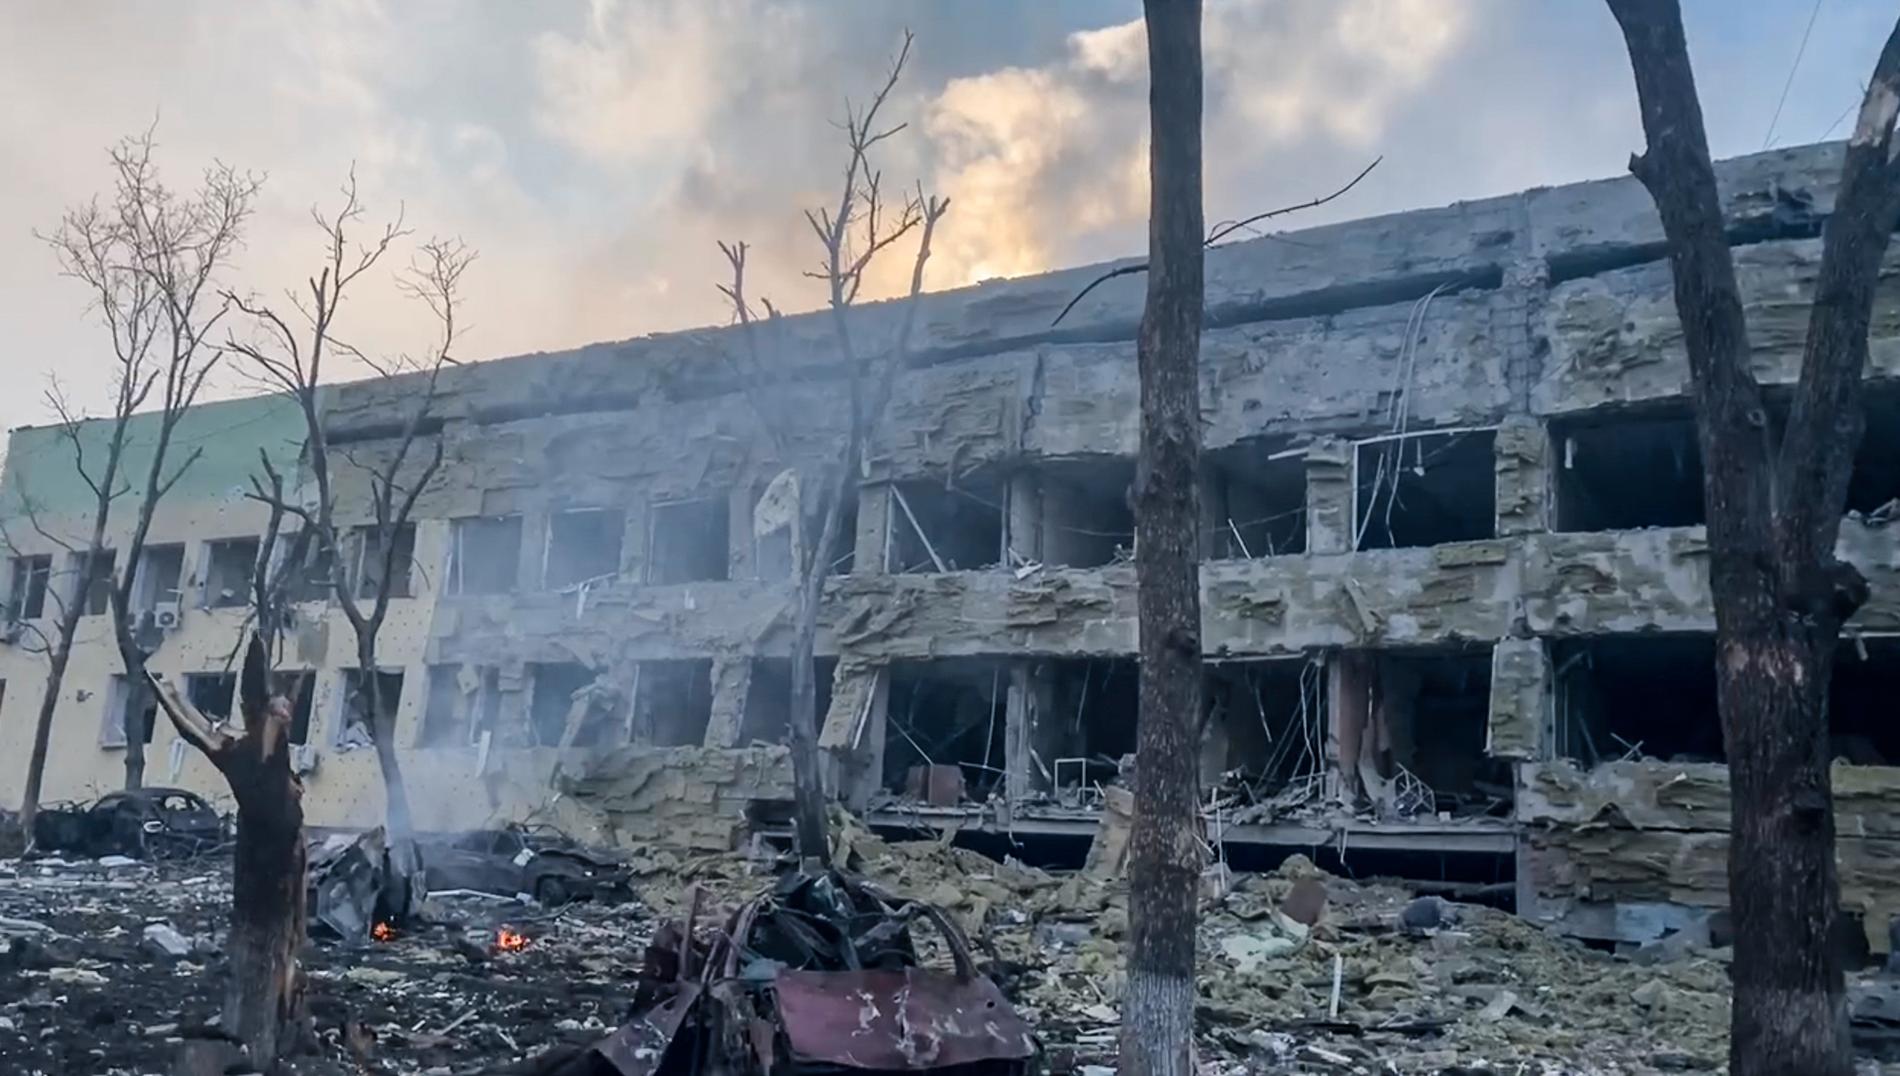 Enligt uppgifter från ukrainska tjänstemän ska flera kvinnor och barn ha skadats i attacken. På bilder och filmer från platsen syns de massiva skadorna på byggnaderna. 